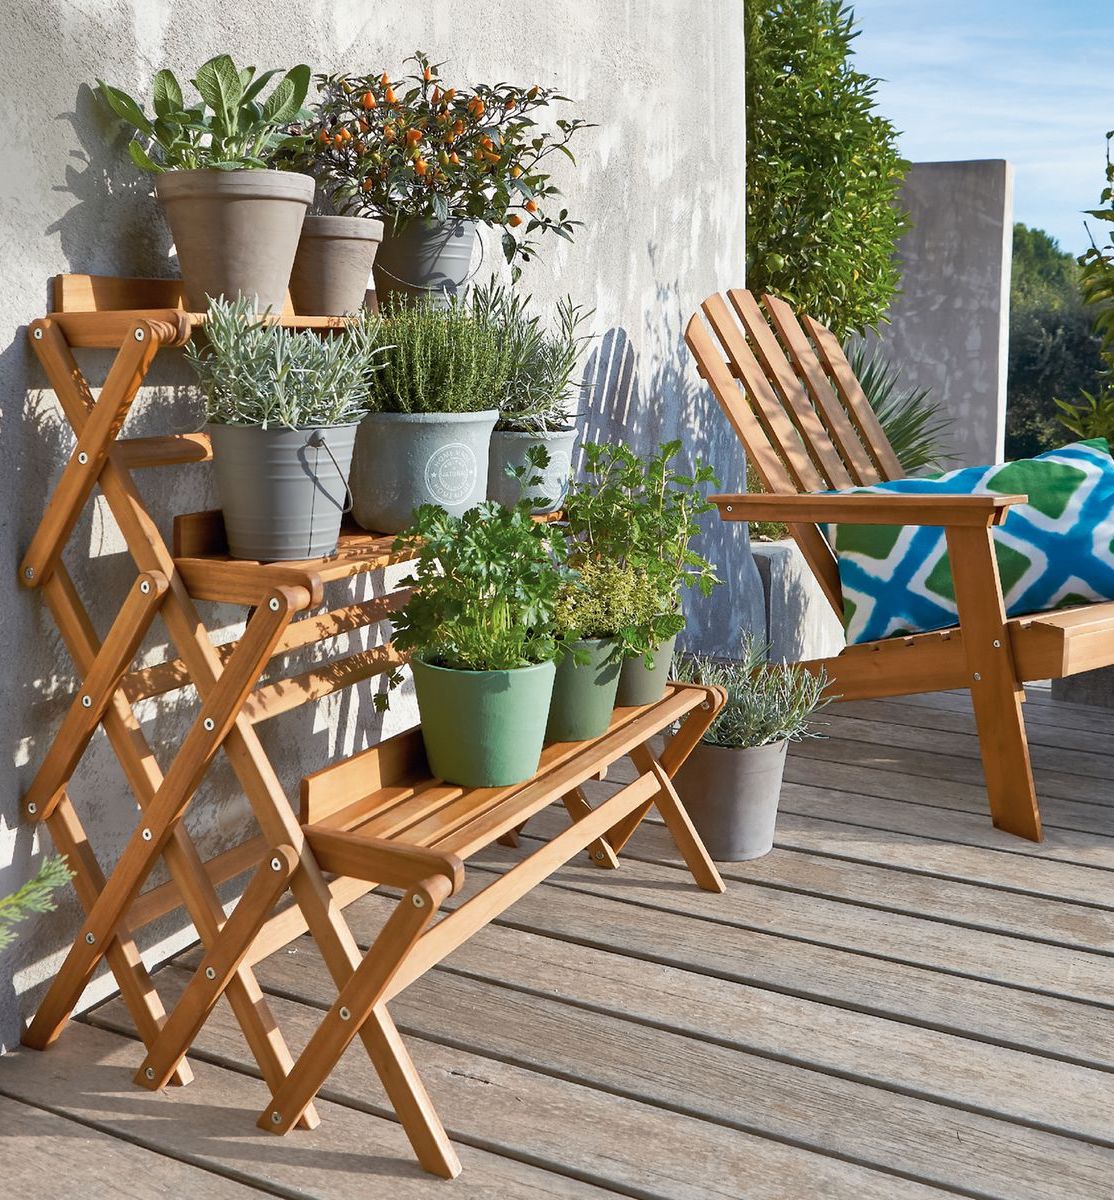 étagère en bois pour plante mur béton gris chaise pliante déco jardin outdoor clemaroundthecorner